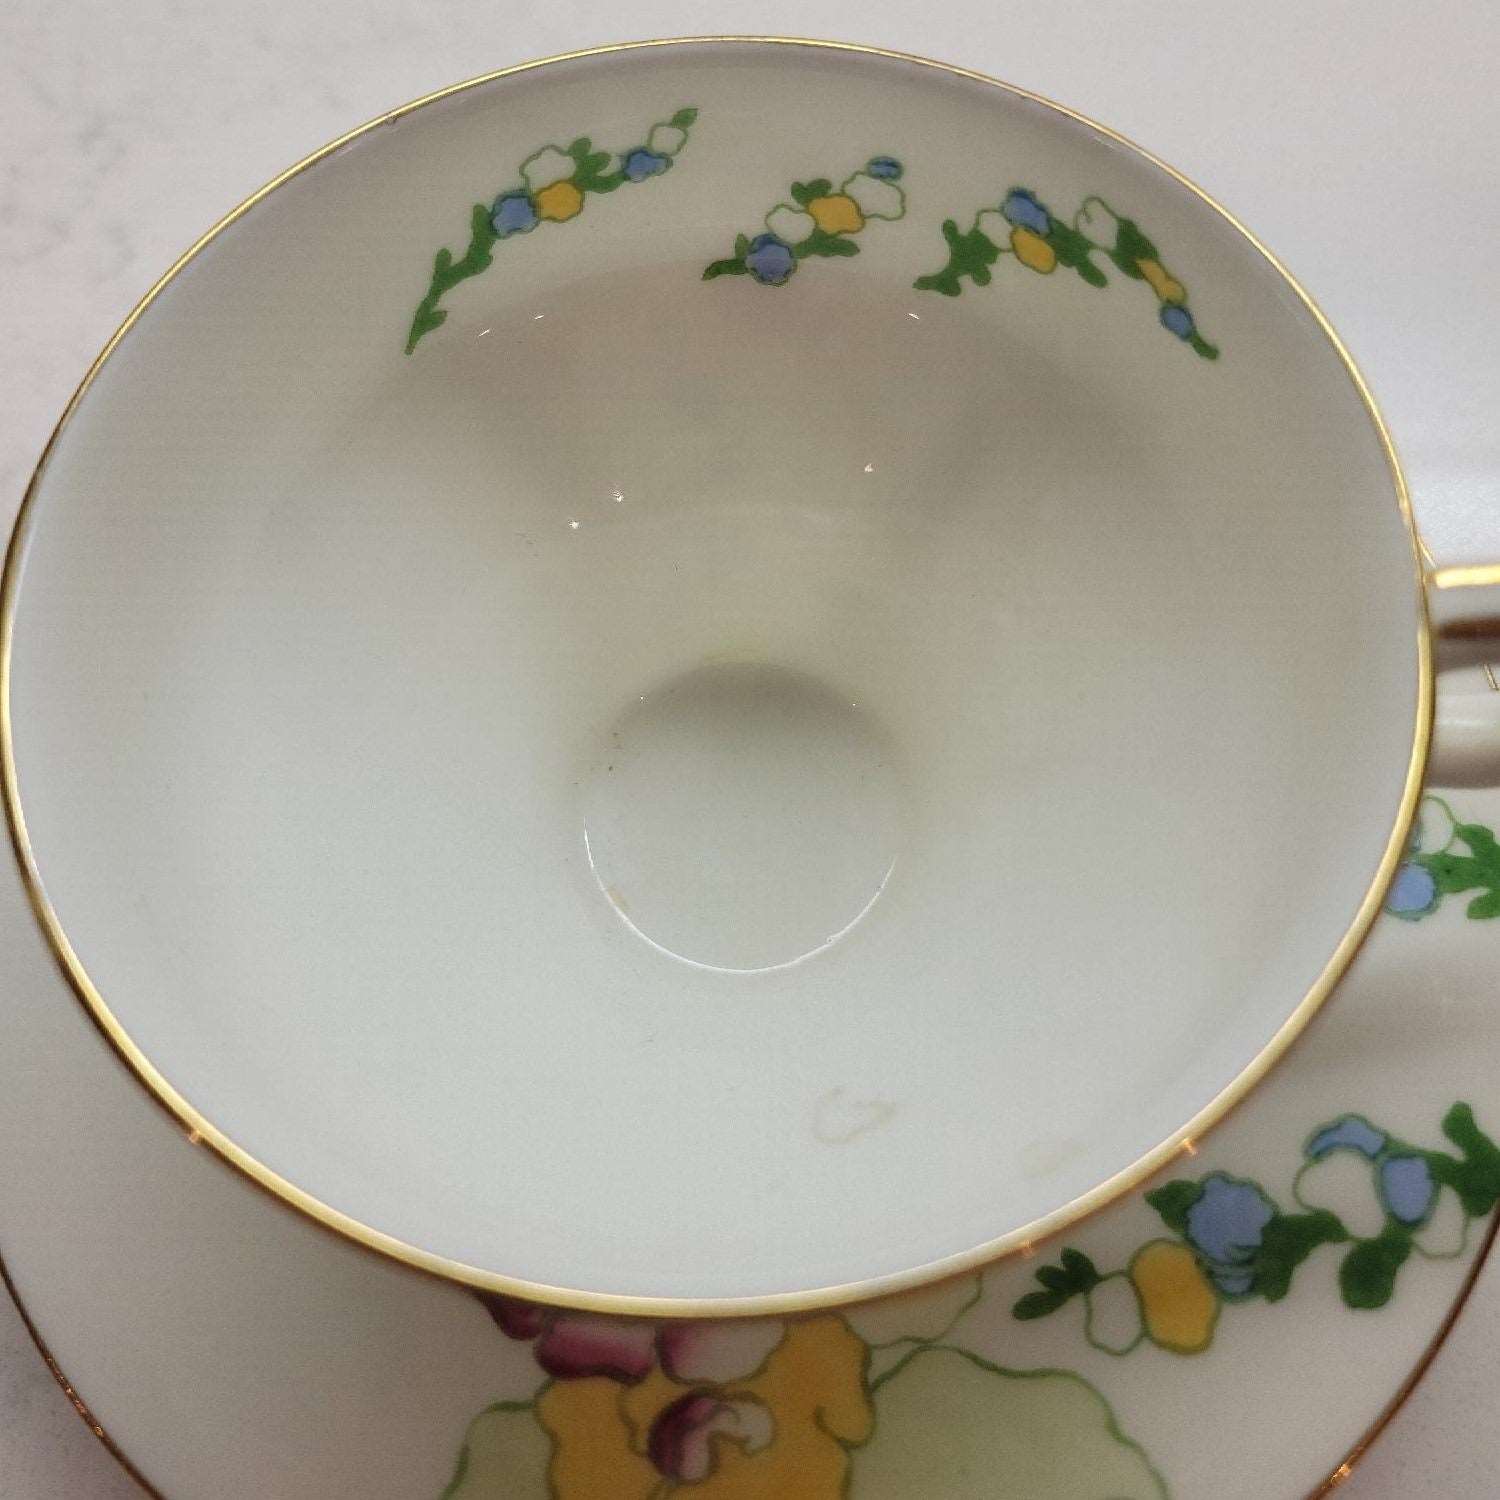 Royal Doulton Art Décor Floral Vintage Tea Cup & Saucer Set